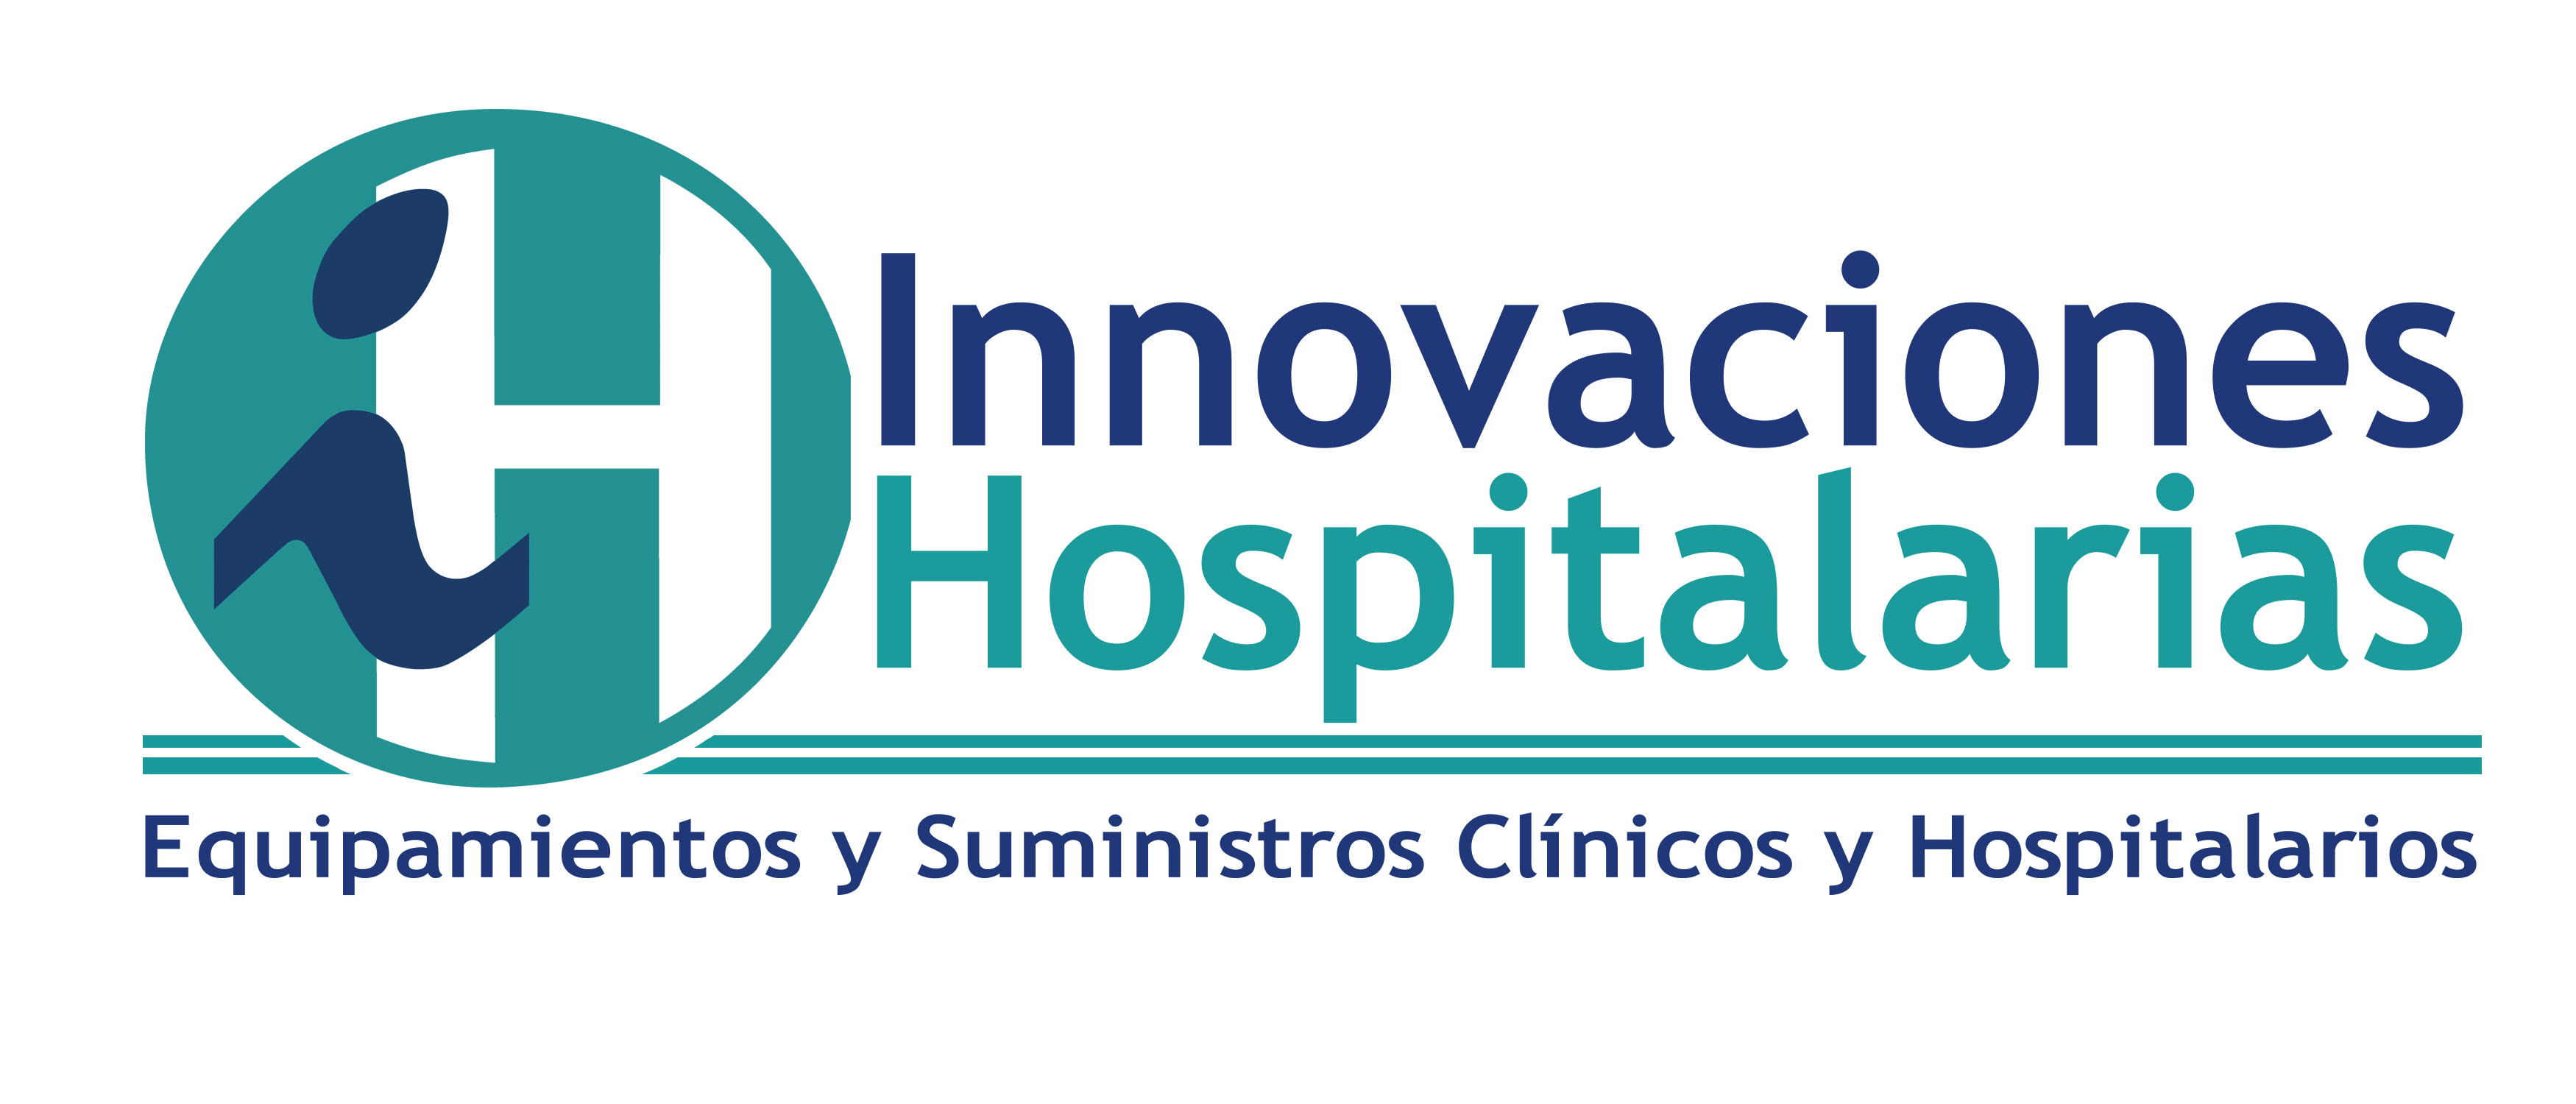 Innovaciones-Hospitalarias